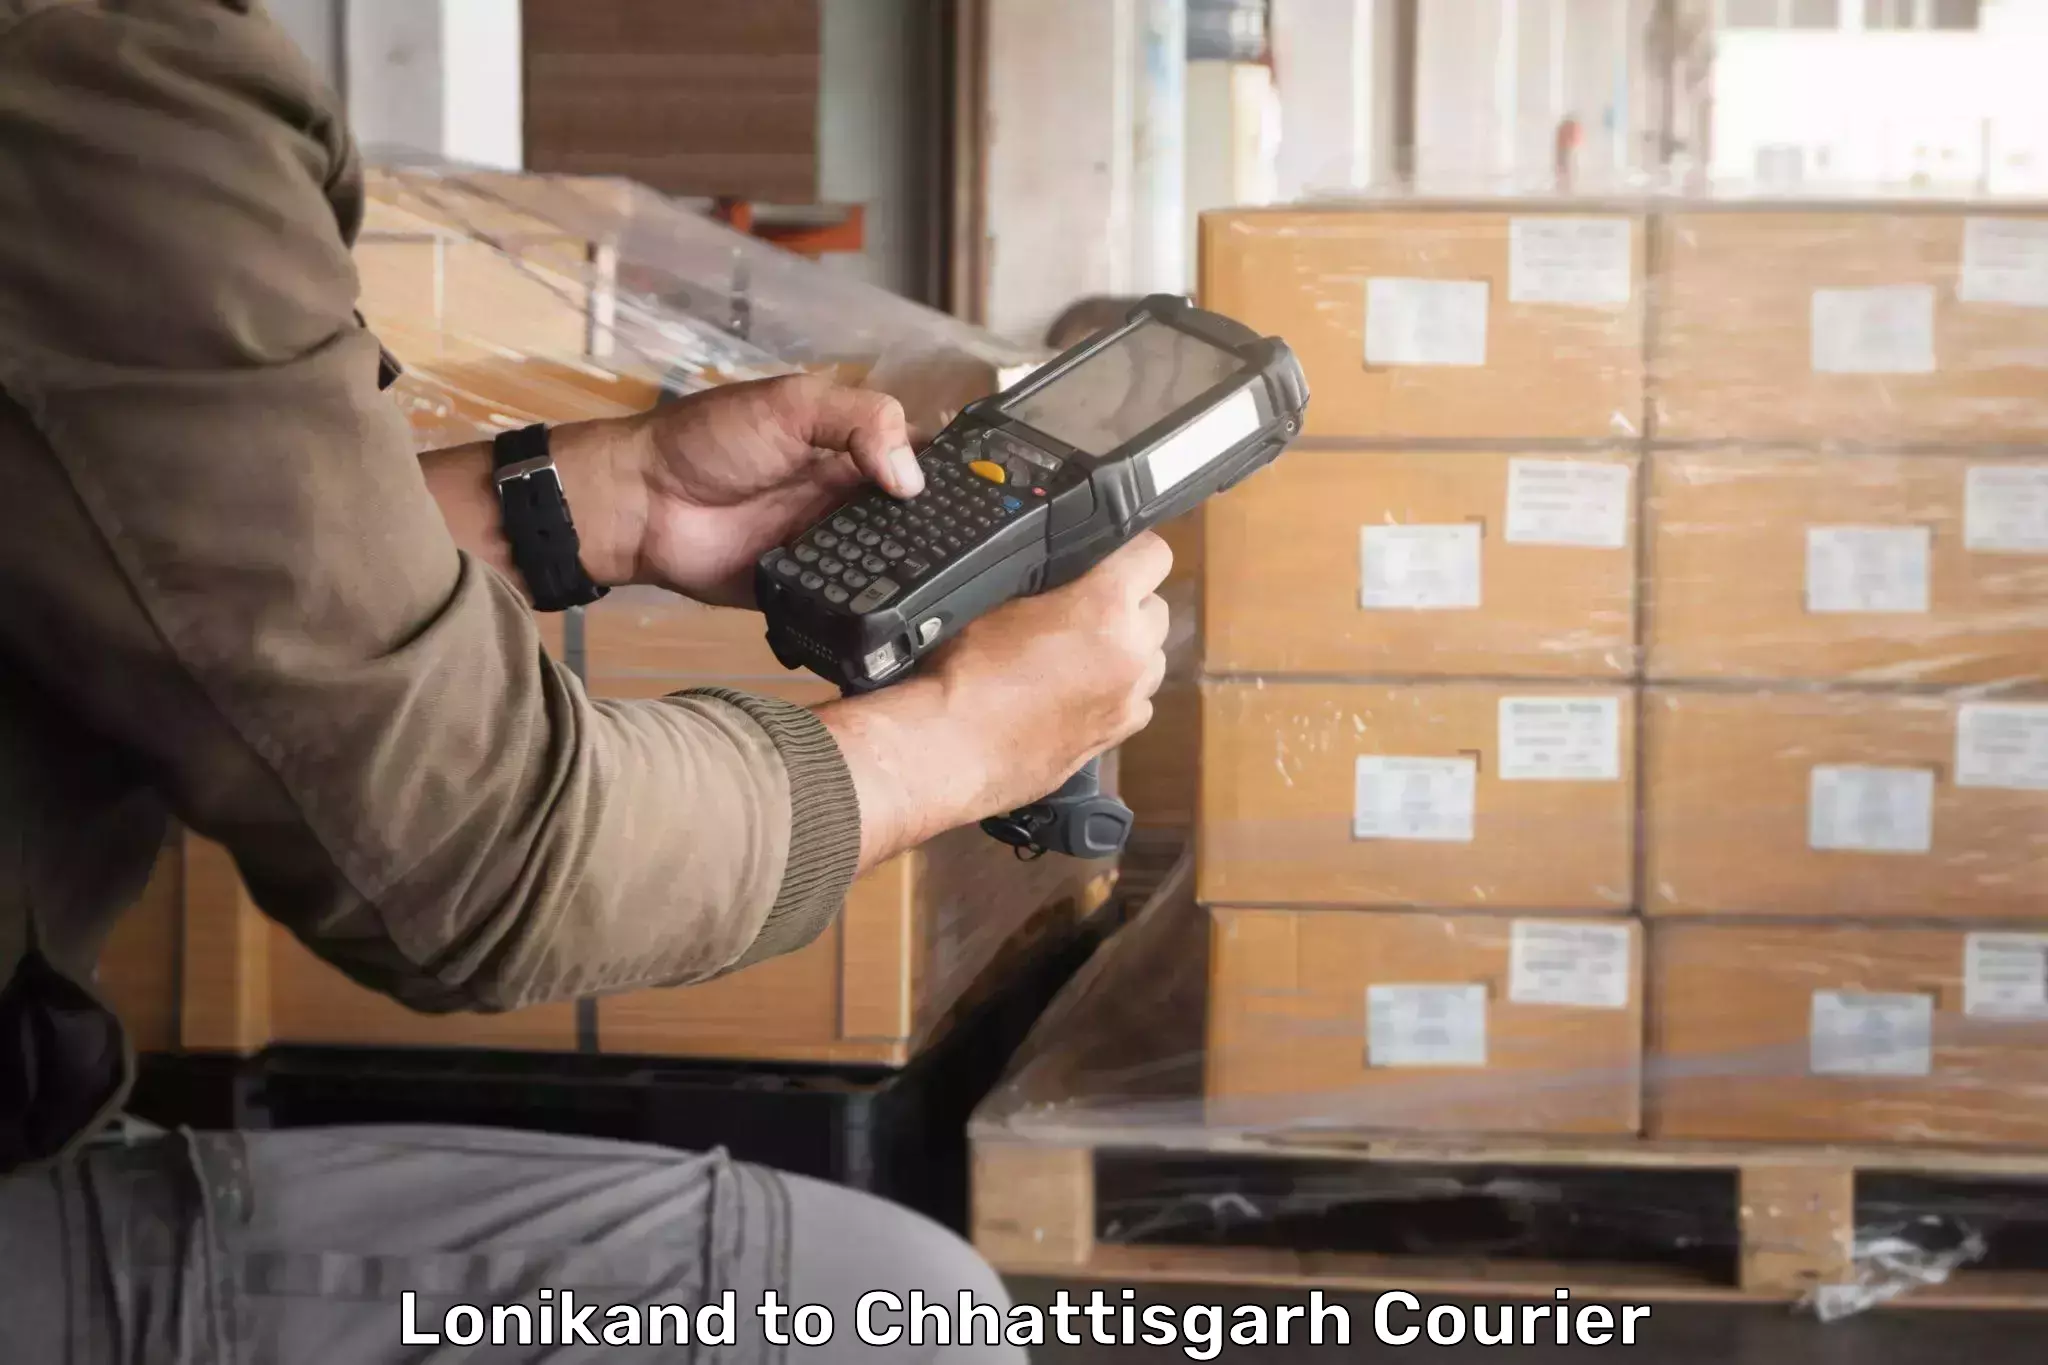 Modern courier technology Lonikand to Pandariya